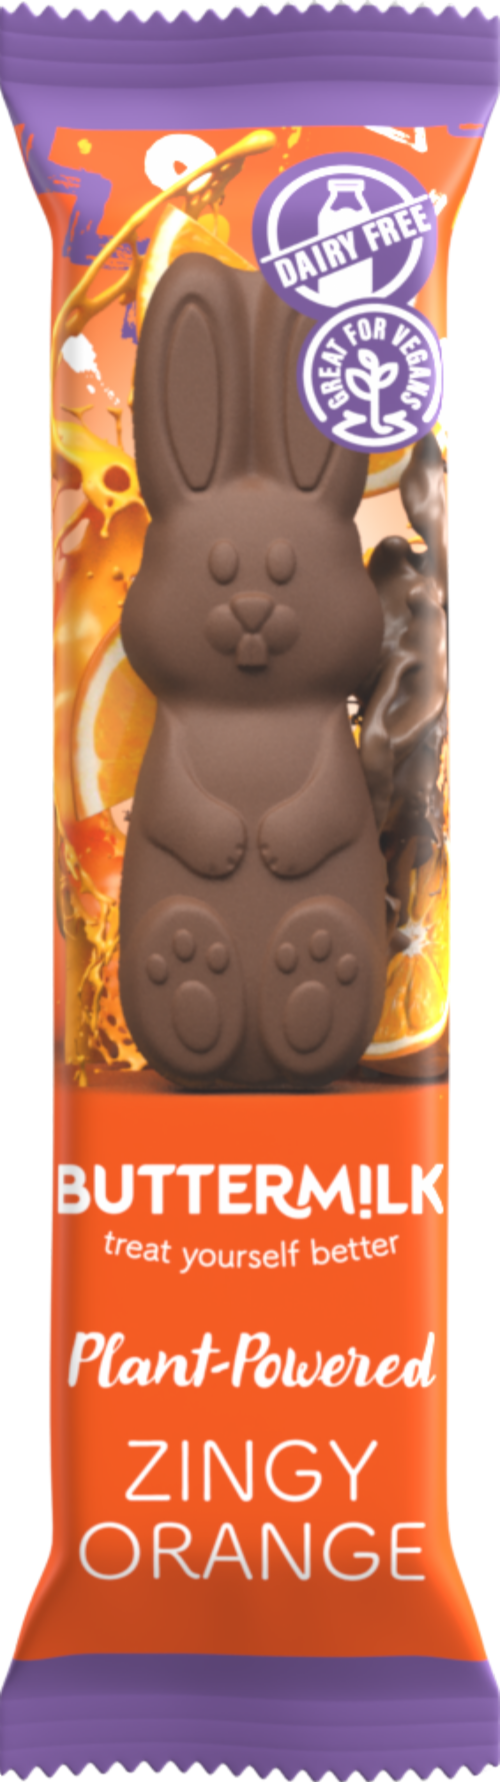 BUTTERMILK Zingy Orange Crisp Bunny Choccy Bar 35g